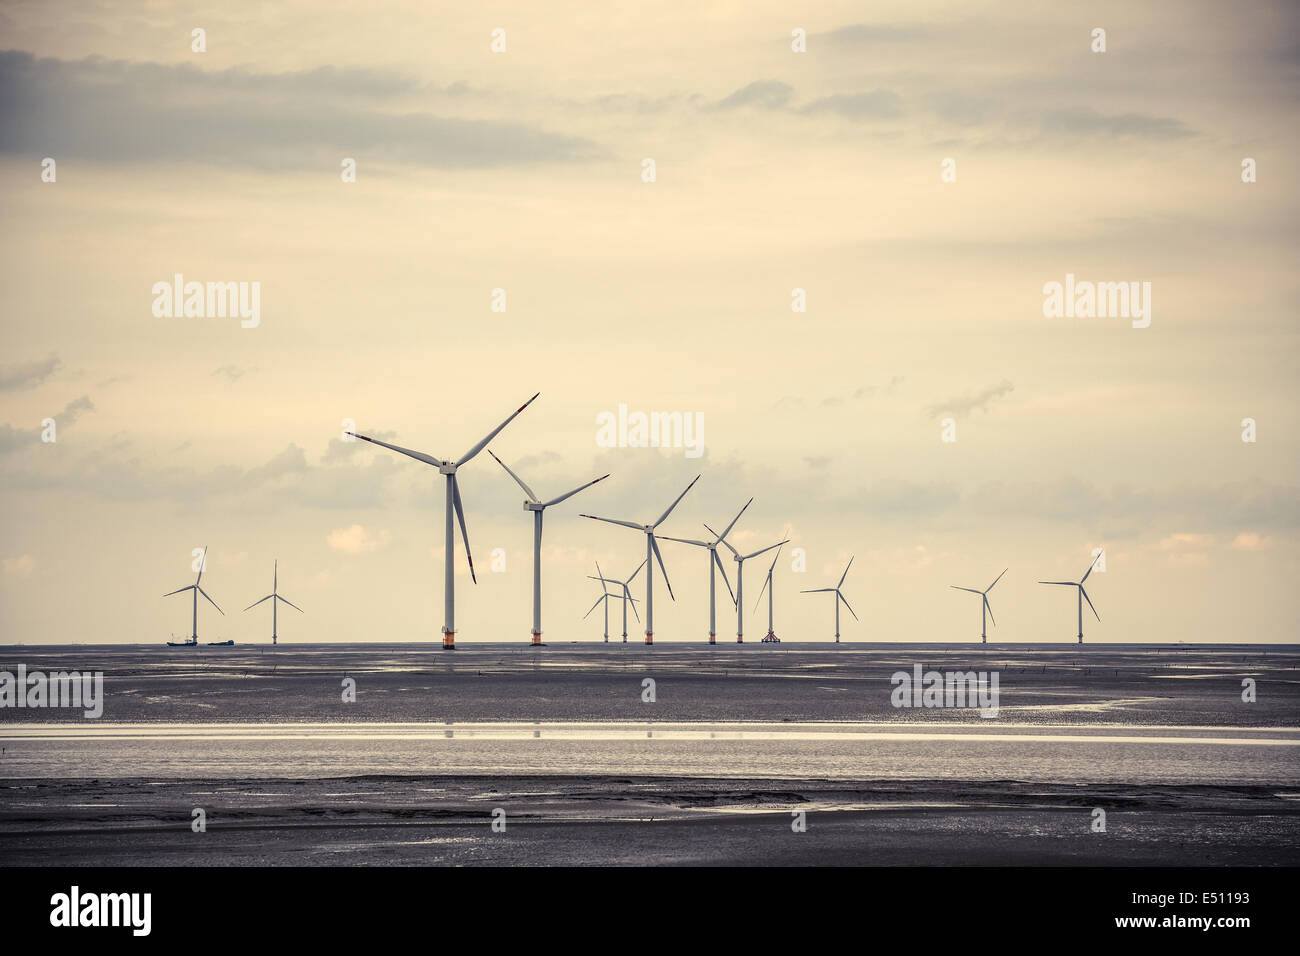 La energía eólica en la plana de barro cerca de la orilla del mar Foto de stock